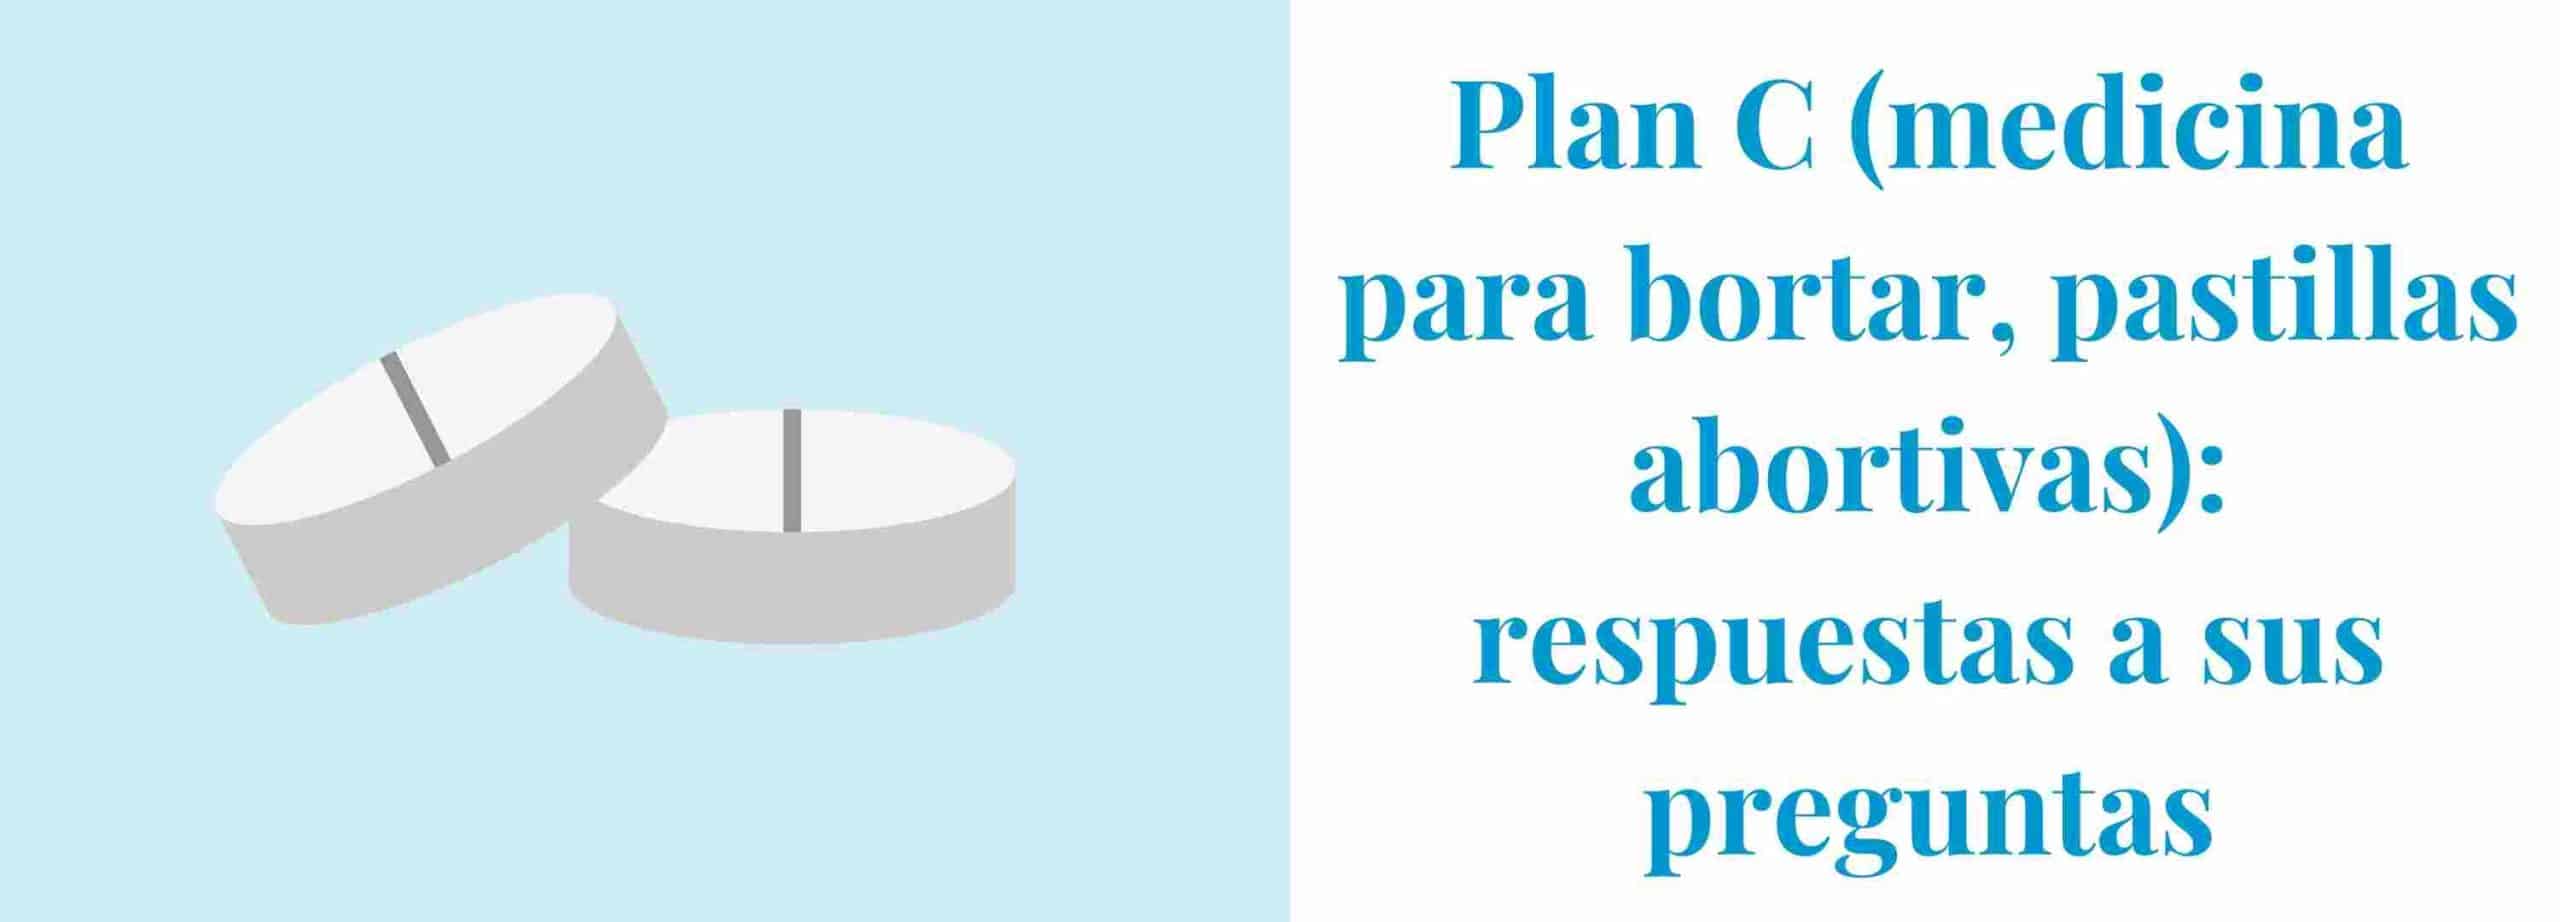 Píldoras Plan C: Todo Lo Que Necesita Saber - Pandia Health